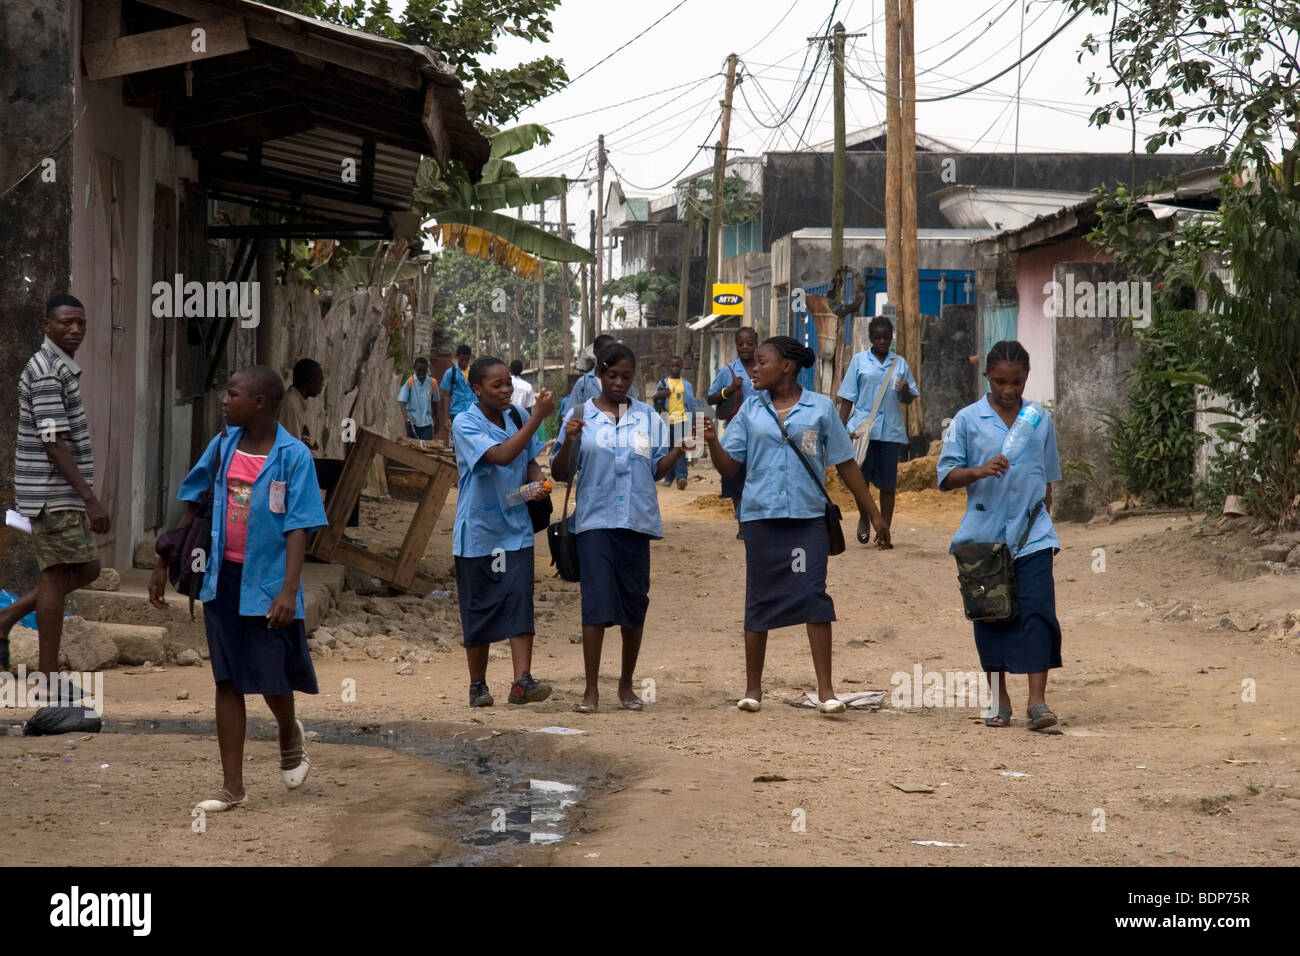 High school girls in uniform going to school in poor neighborhood of Grand Moulin Douala Cameroon West Africa Stock Photo